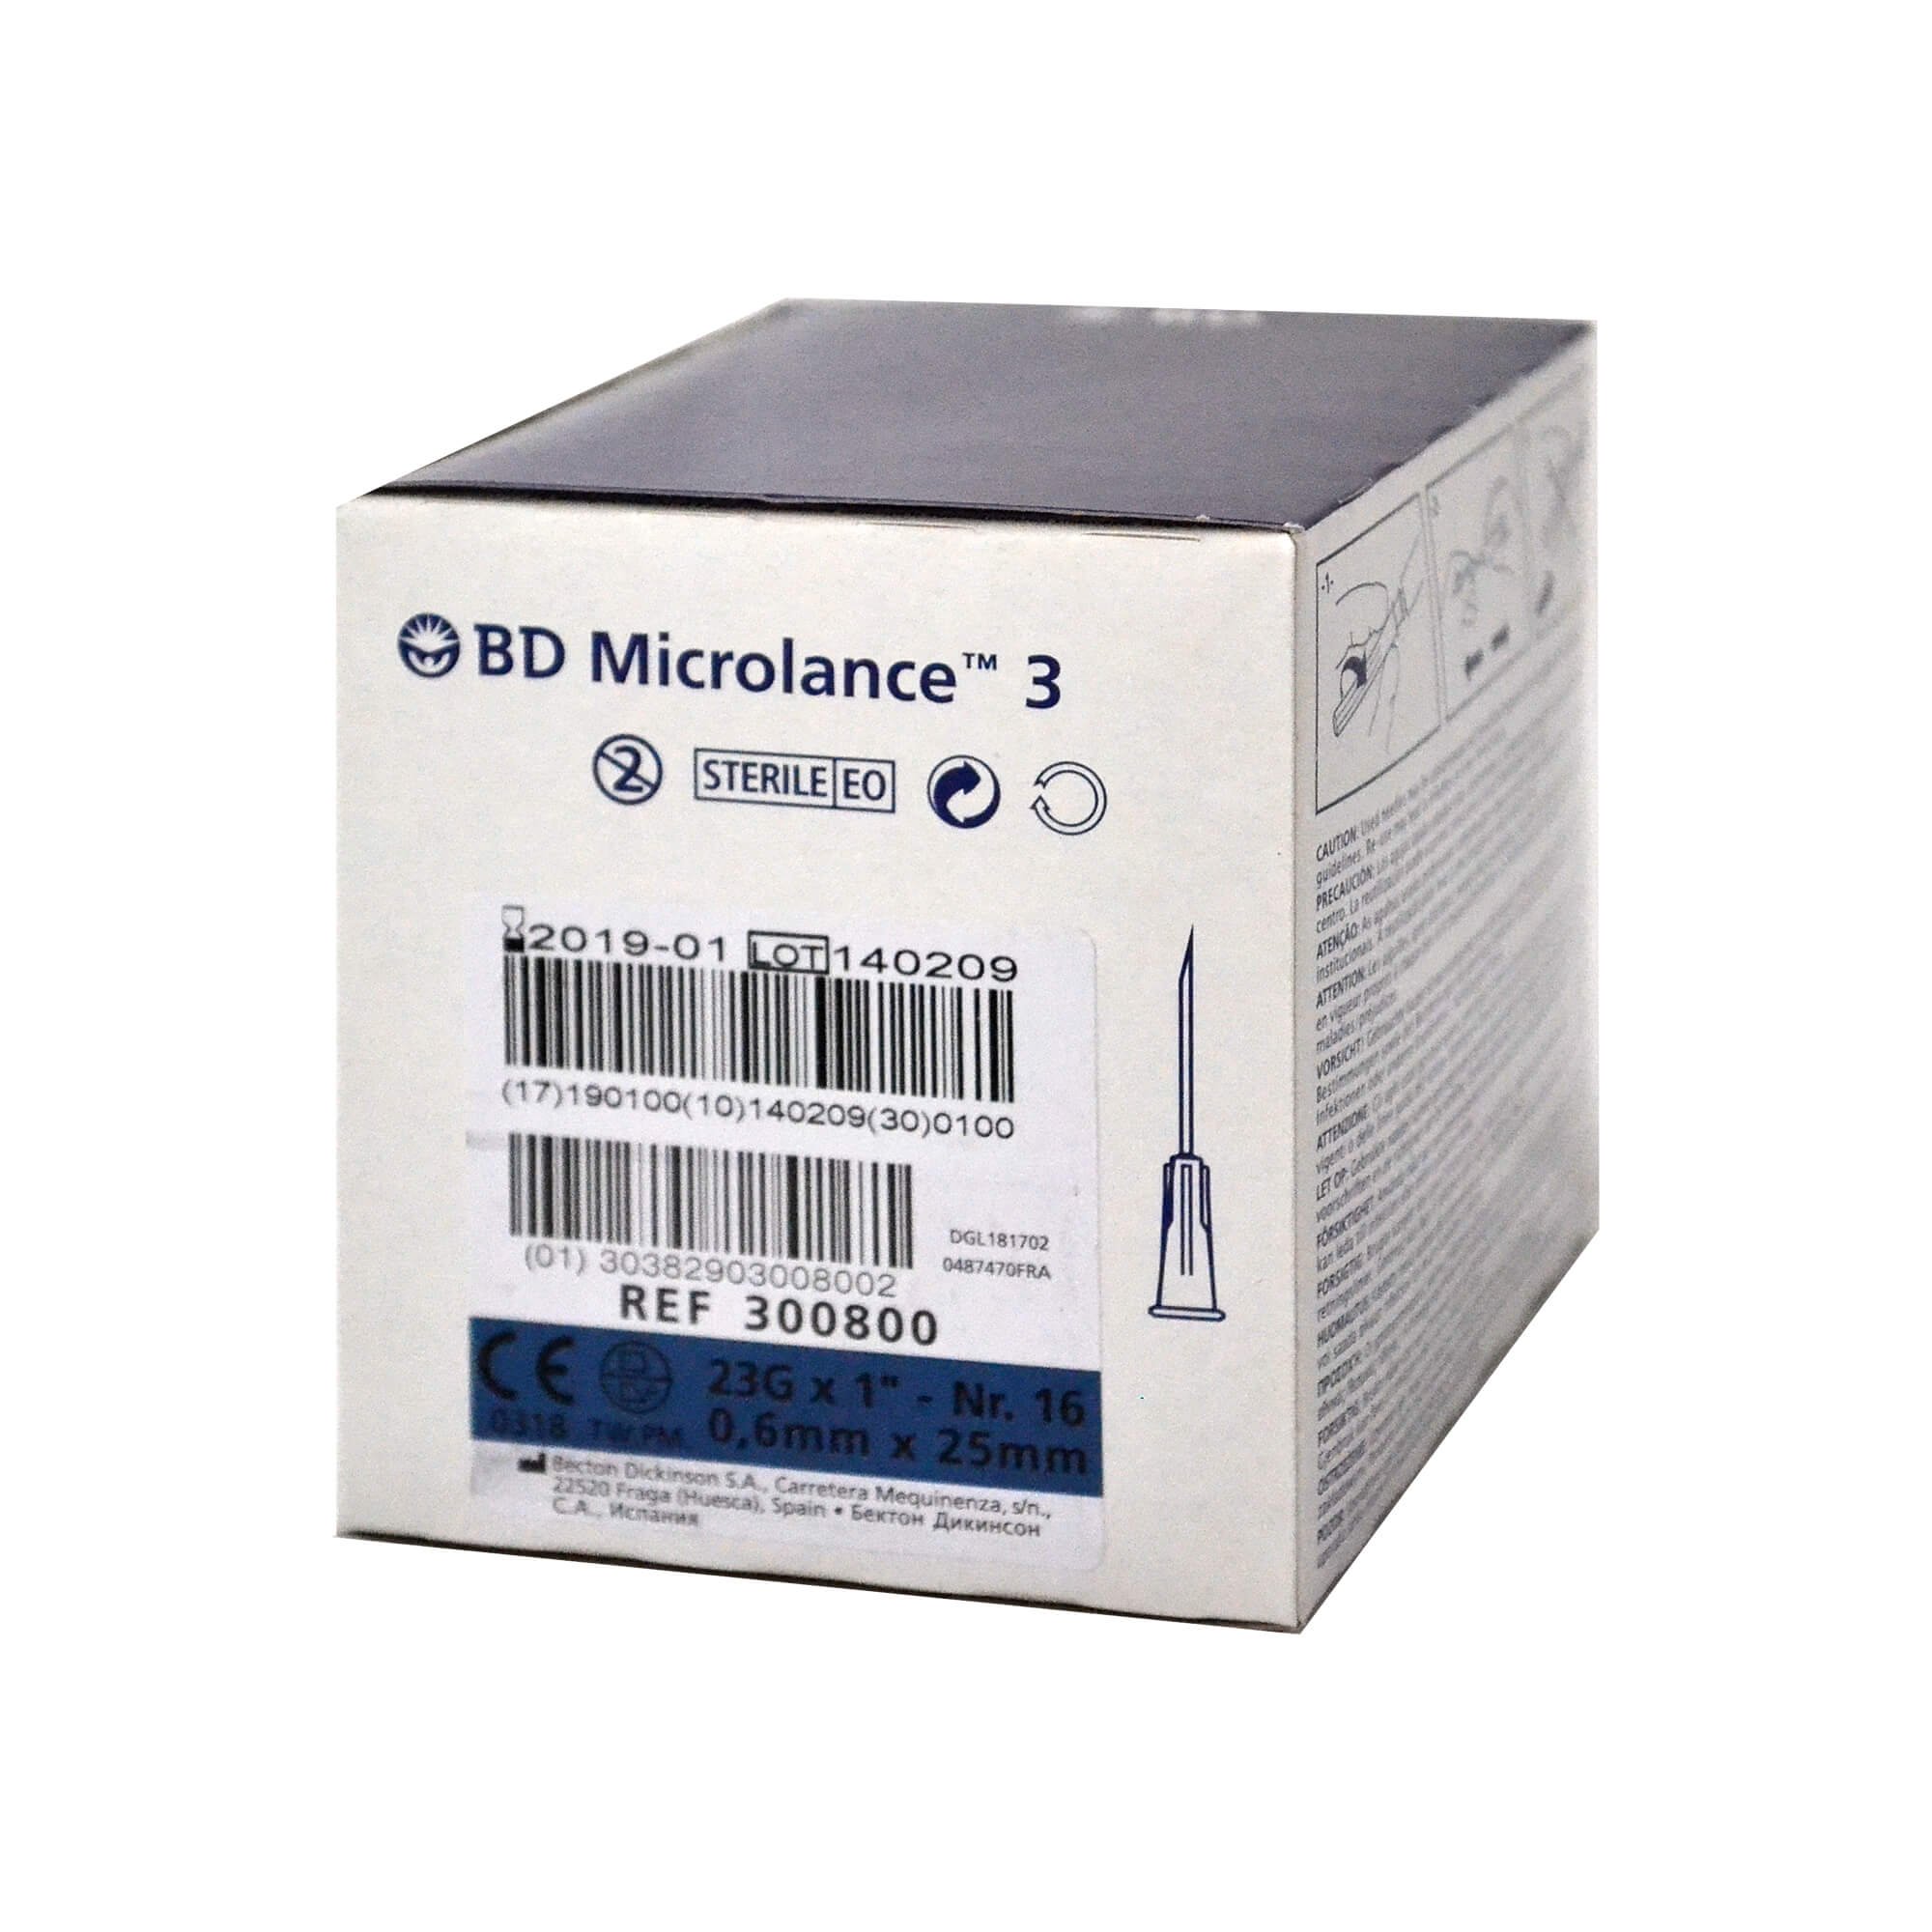 BD Microlance 3 Kanüle, 23 G x 1", Nr. 16, 0,6 mm x 25 mm.